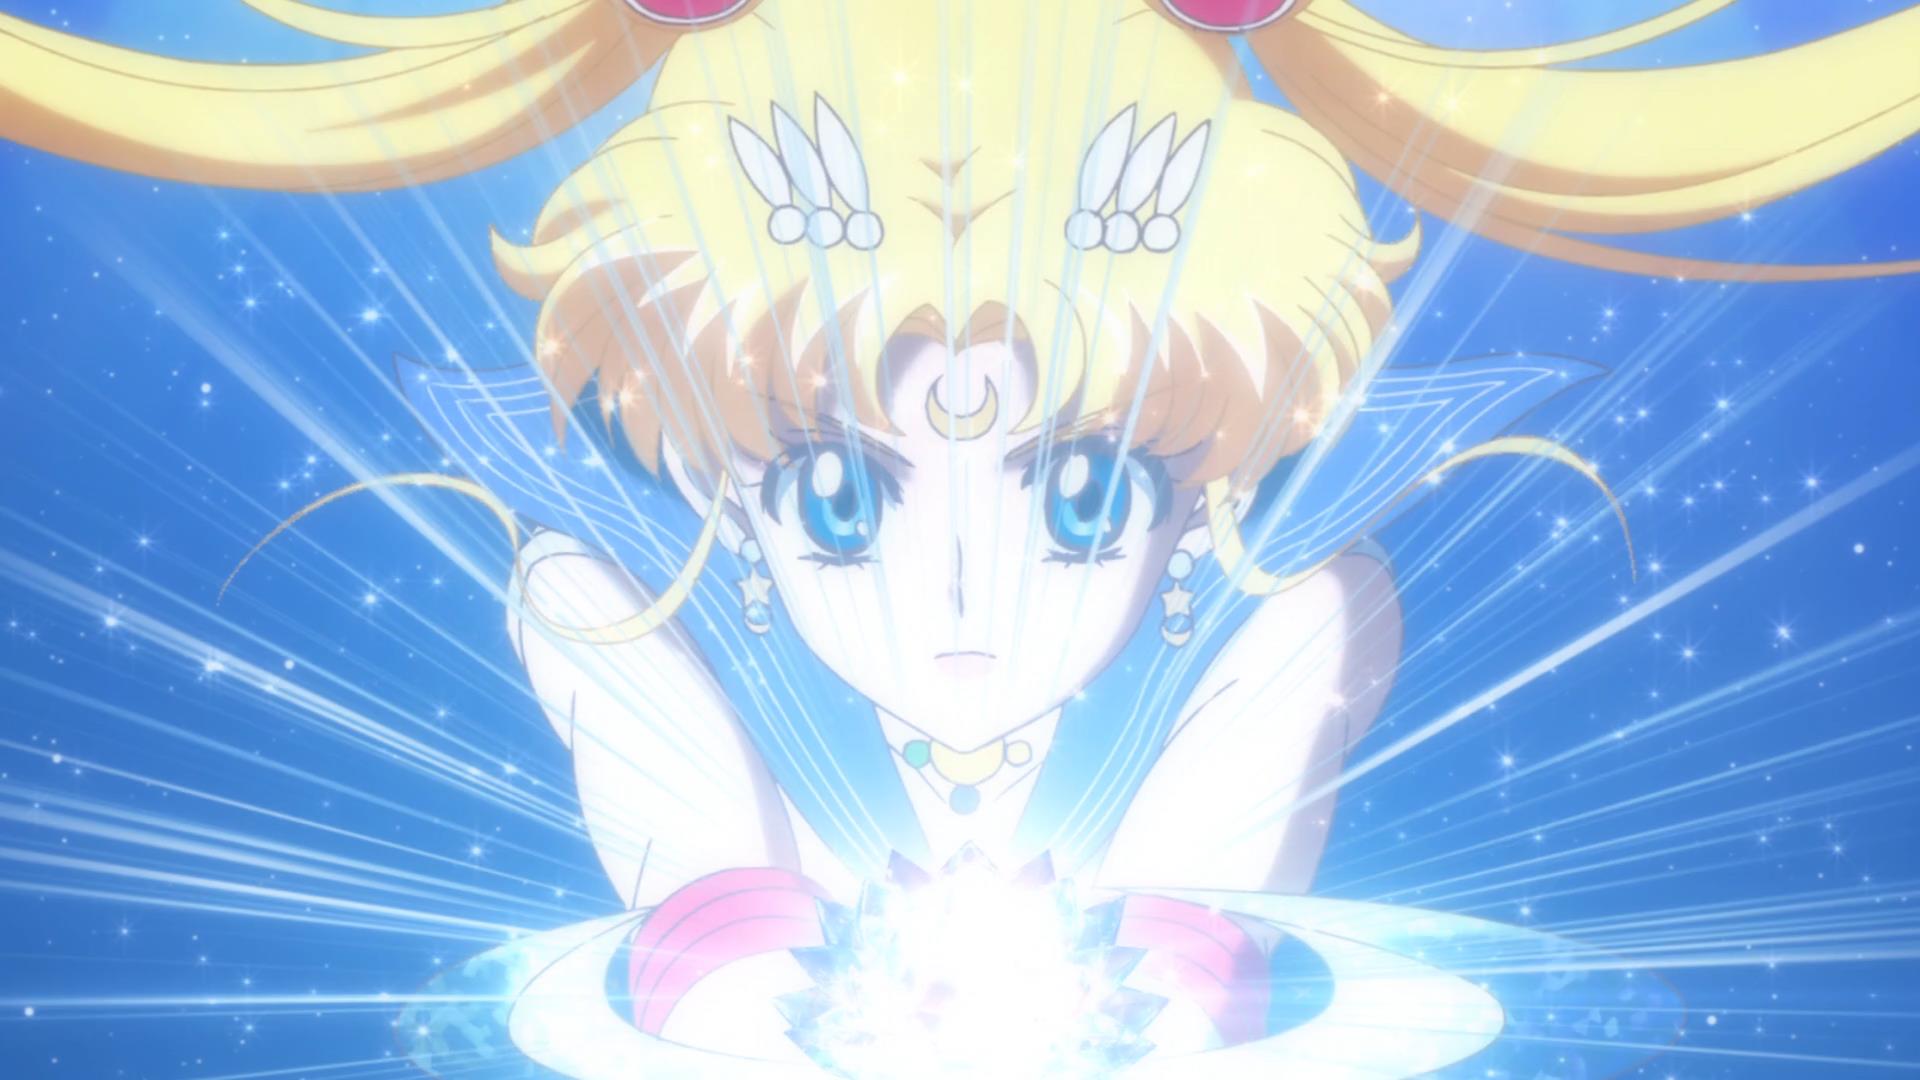 VIZ  Blog / Sailor Moon Crystal